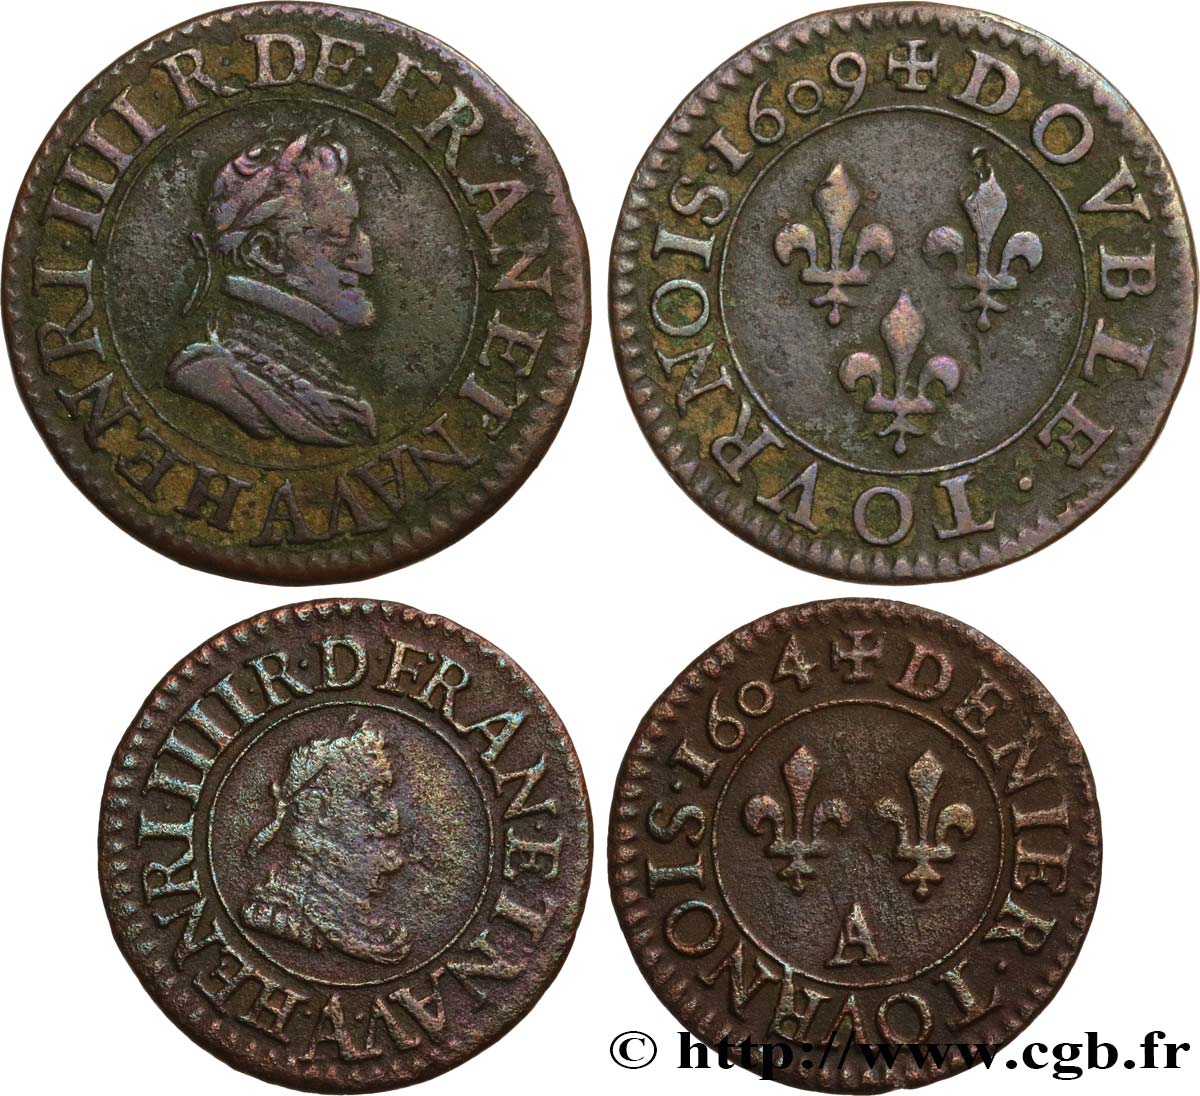 HENRI IV LE GRAND Lot de 2 monnaies royales n.d. s.l. TB+